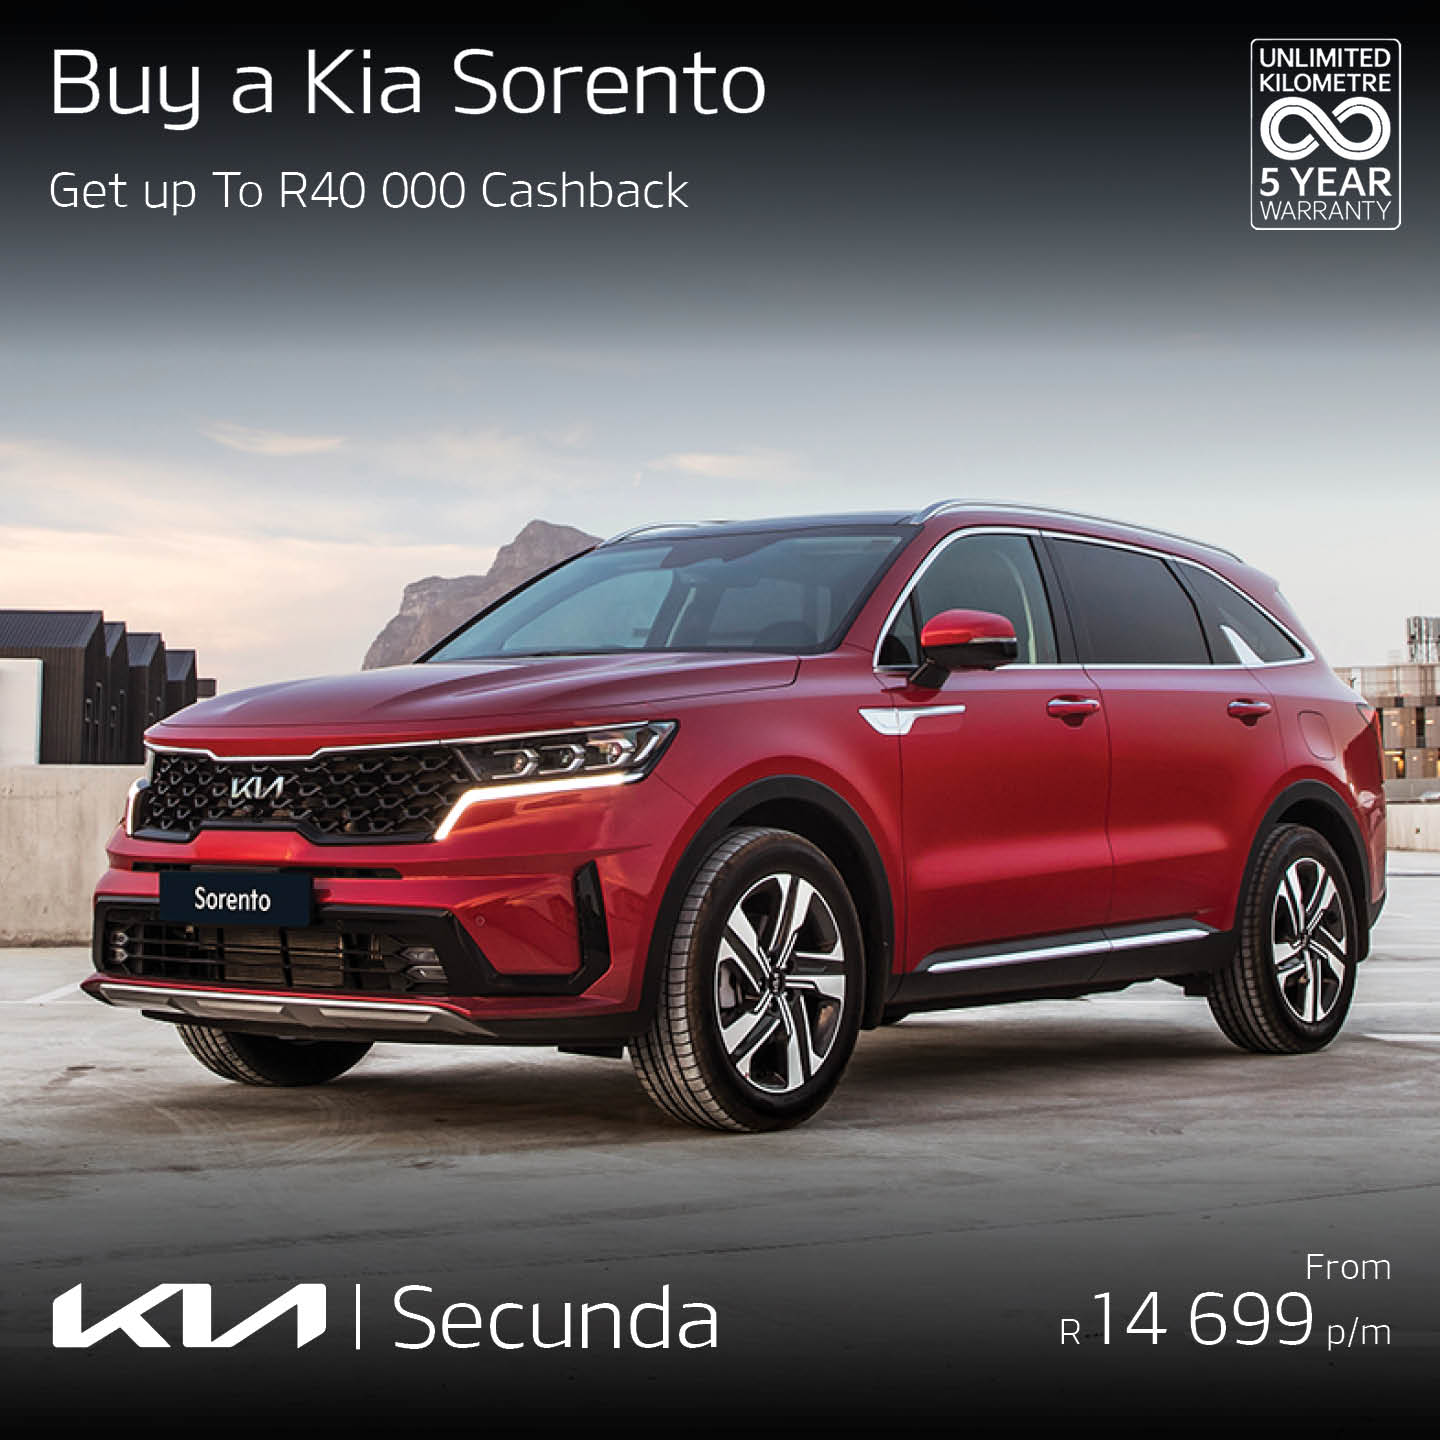 Buy a new KIA Sorento image from Eastvaal Motors